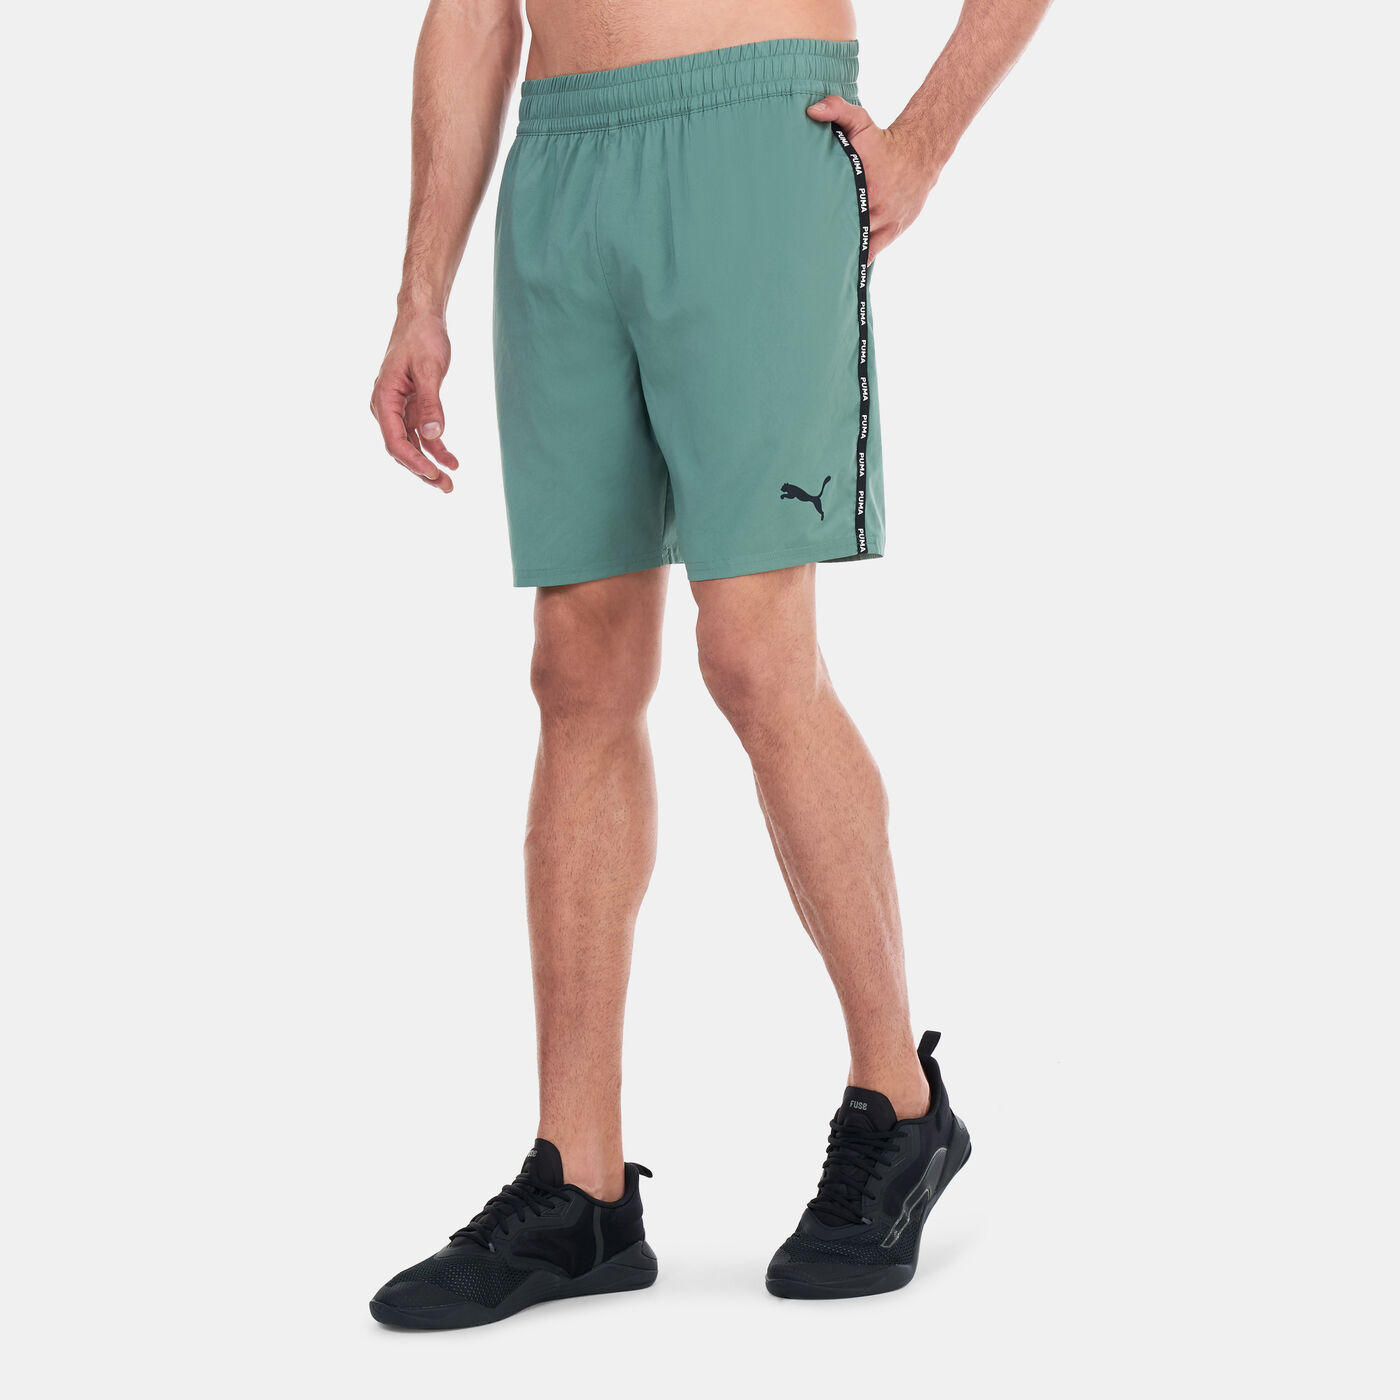 Men's Training Shorts